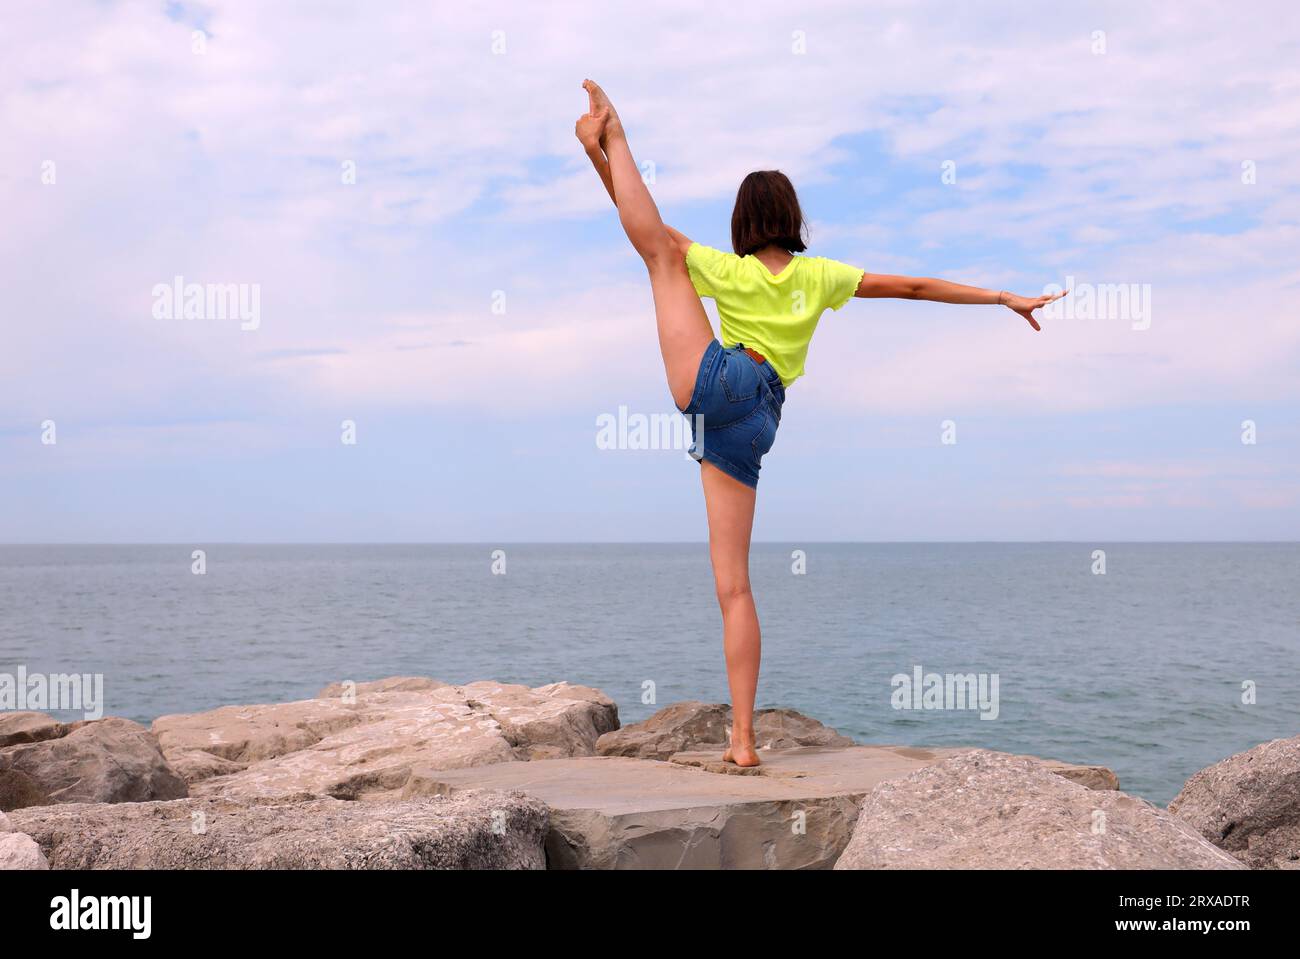 giovane ragazza snella che lancia la gamba in aria durante gli esercizi di ginnastica sulle rocce in riva al mare Foto Stock